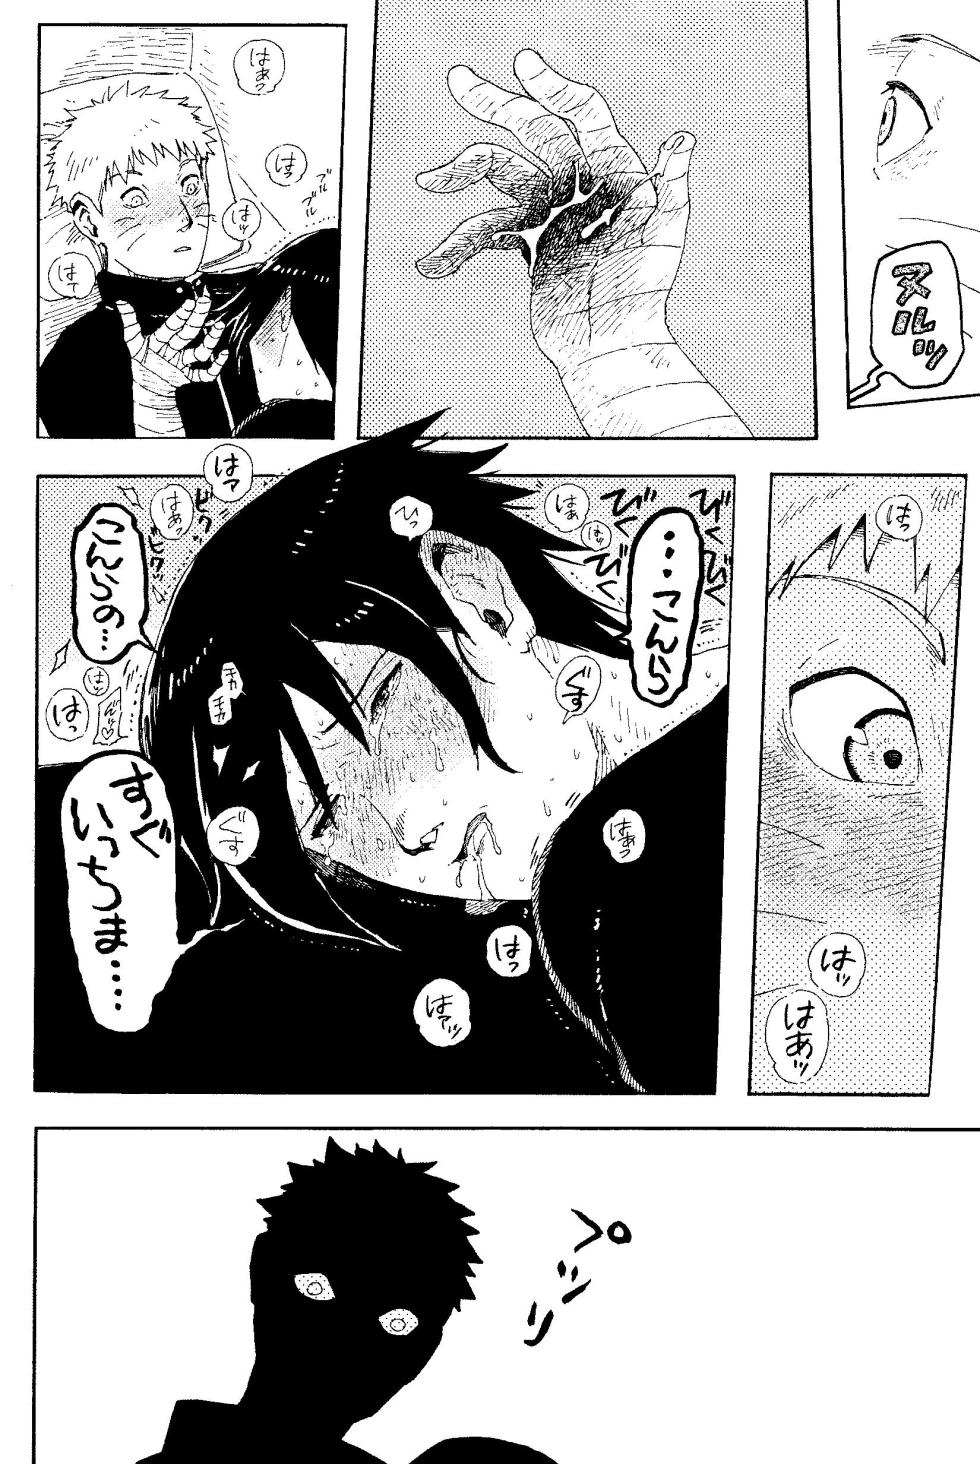 [Mutamuta Land (Mutako)] THE FIRST ep 7.5 (Naruto) - Page 16